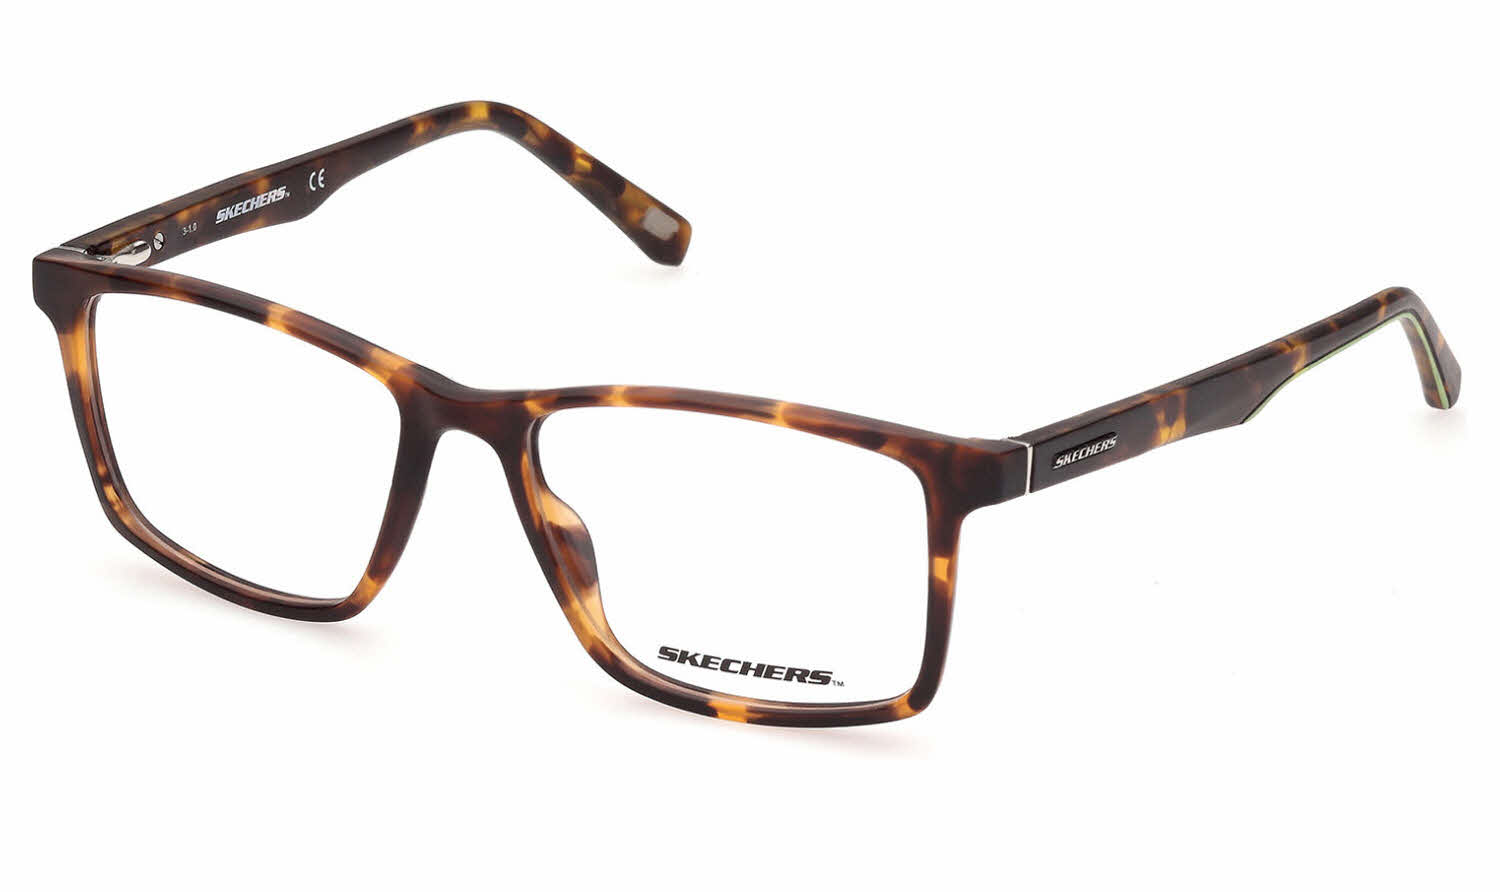 Skechers SE3301 Eyeglasses